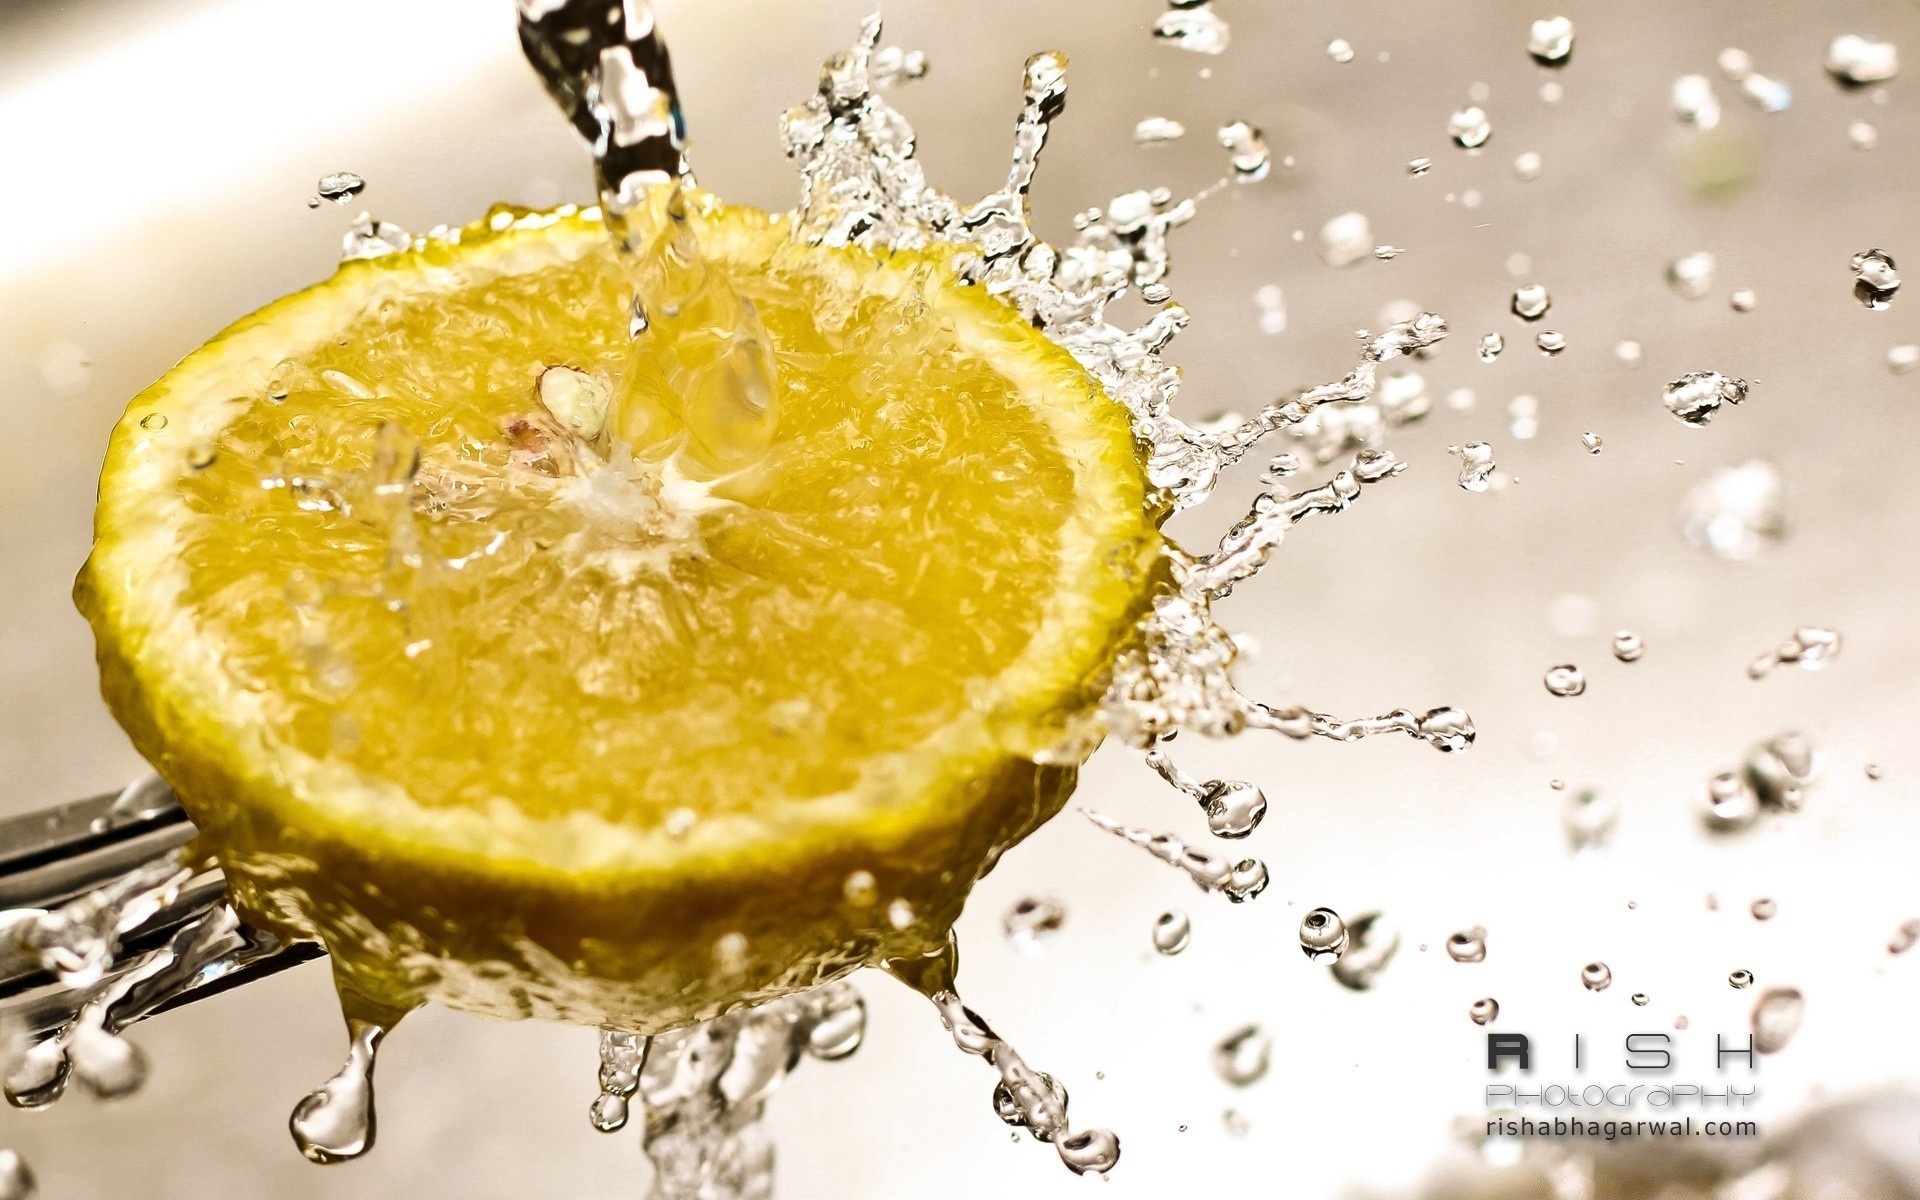 фрукты мокрый падение воды всплеск пить жидкость пузырь освежение сок свежесть чистота еда здоровый сочные сладкий чистые пульсация здоровья